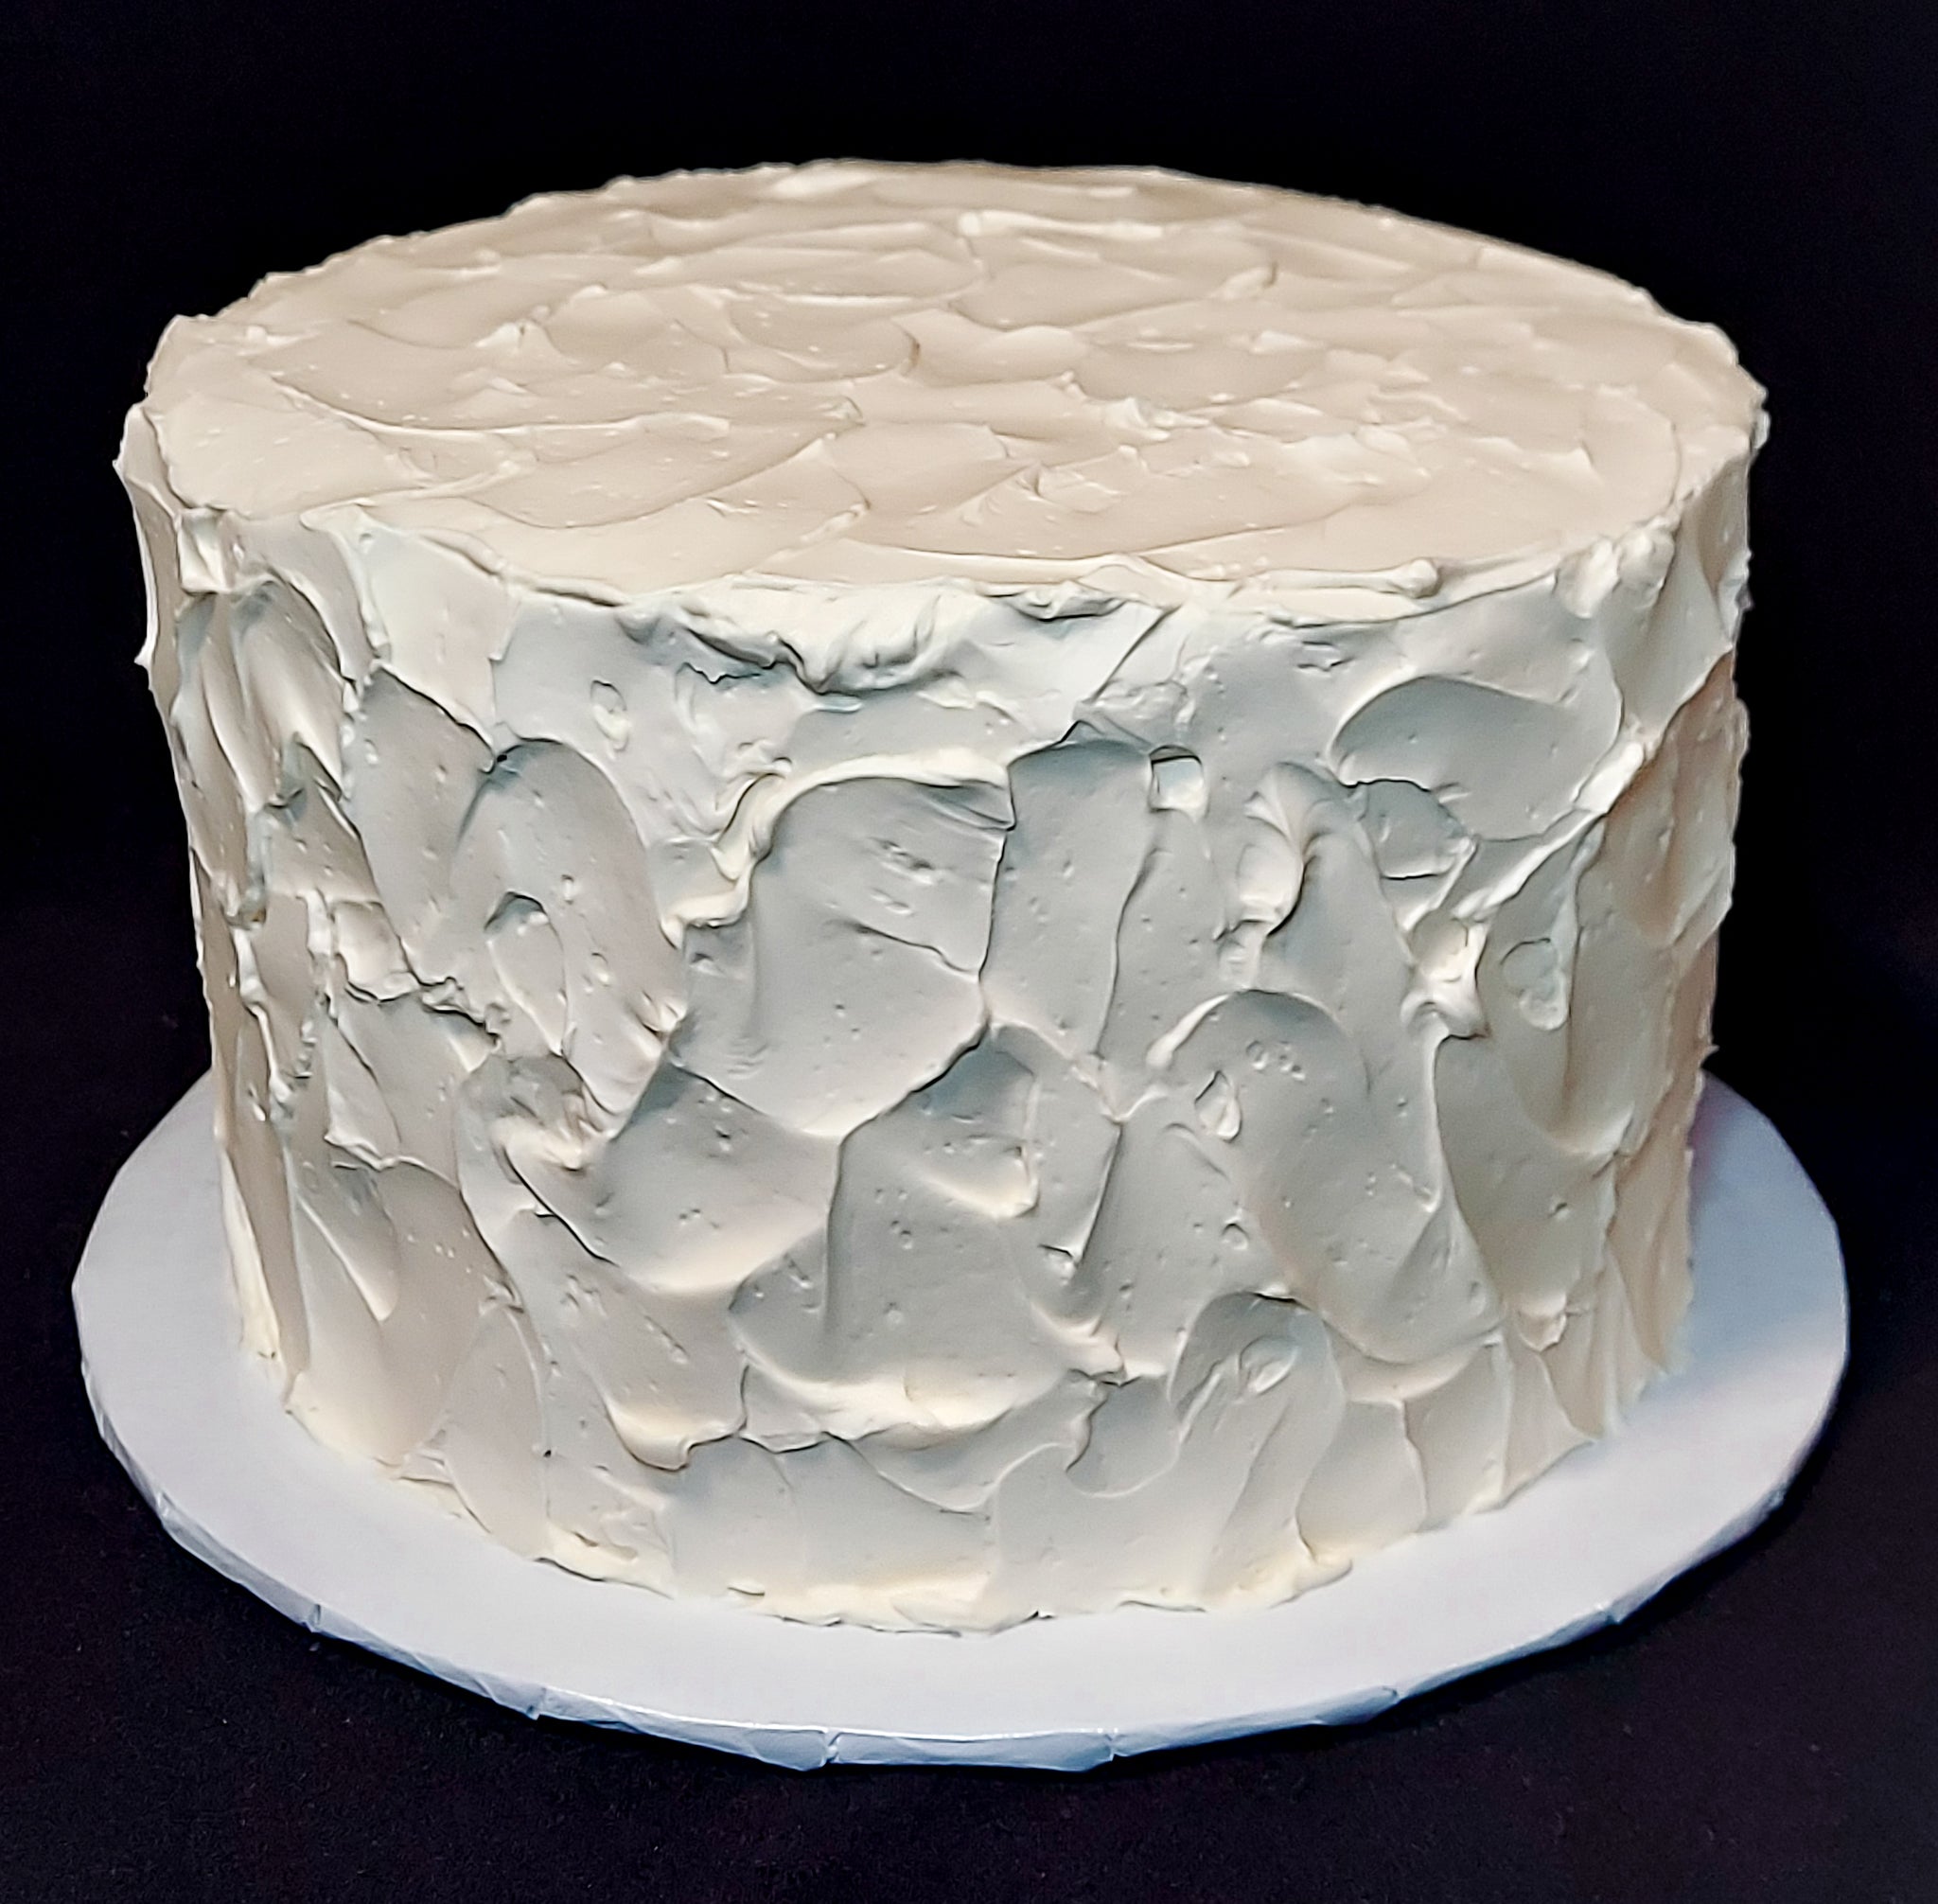 Easy Homemade Wedding Cake Recipe - Easy Dessert Recipes